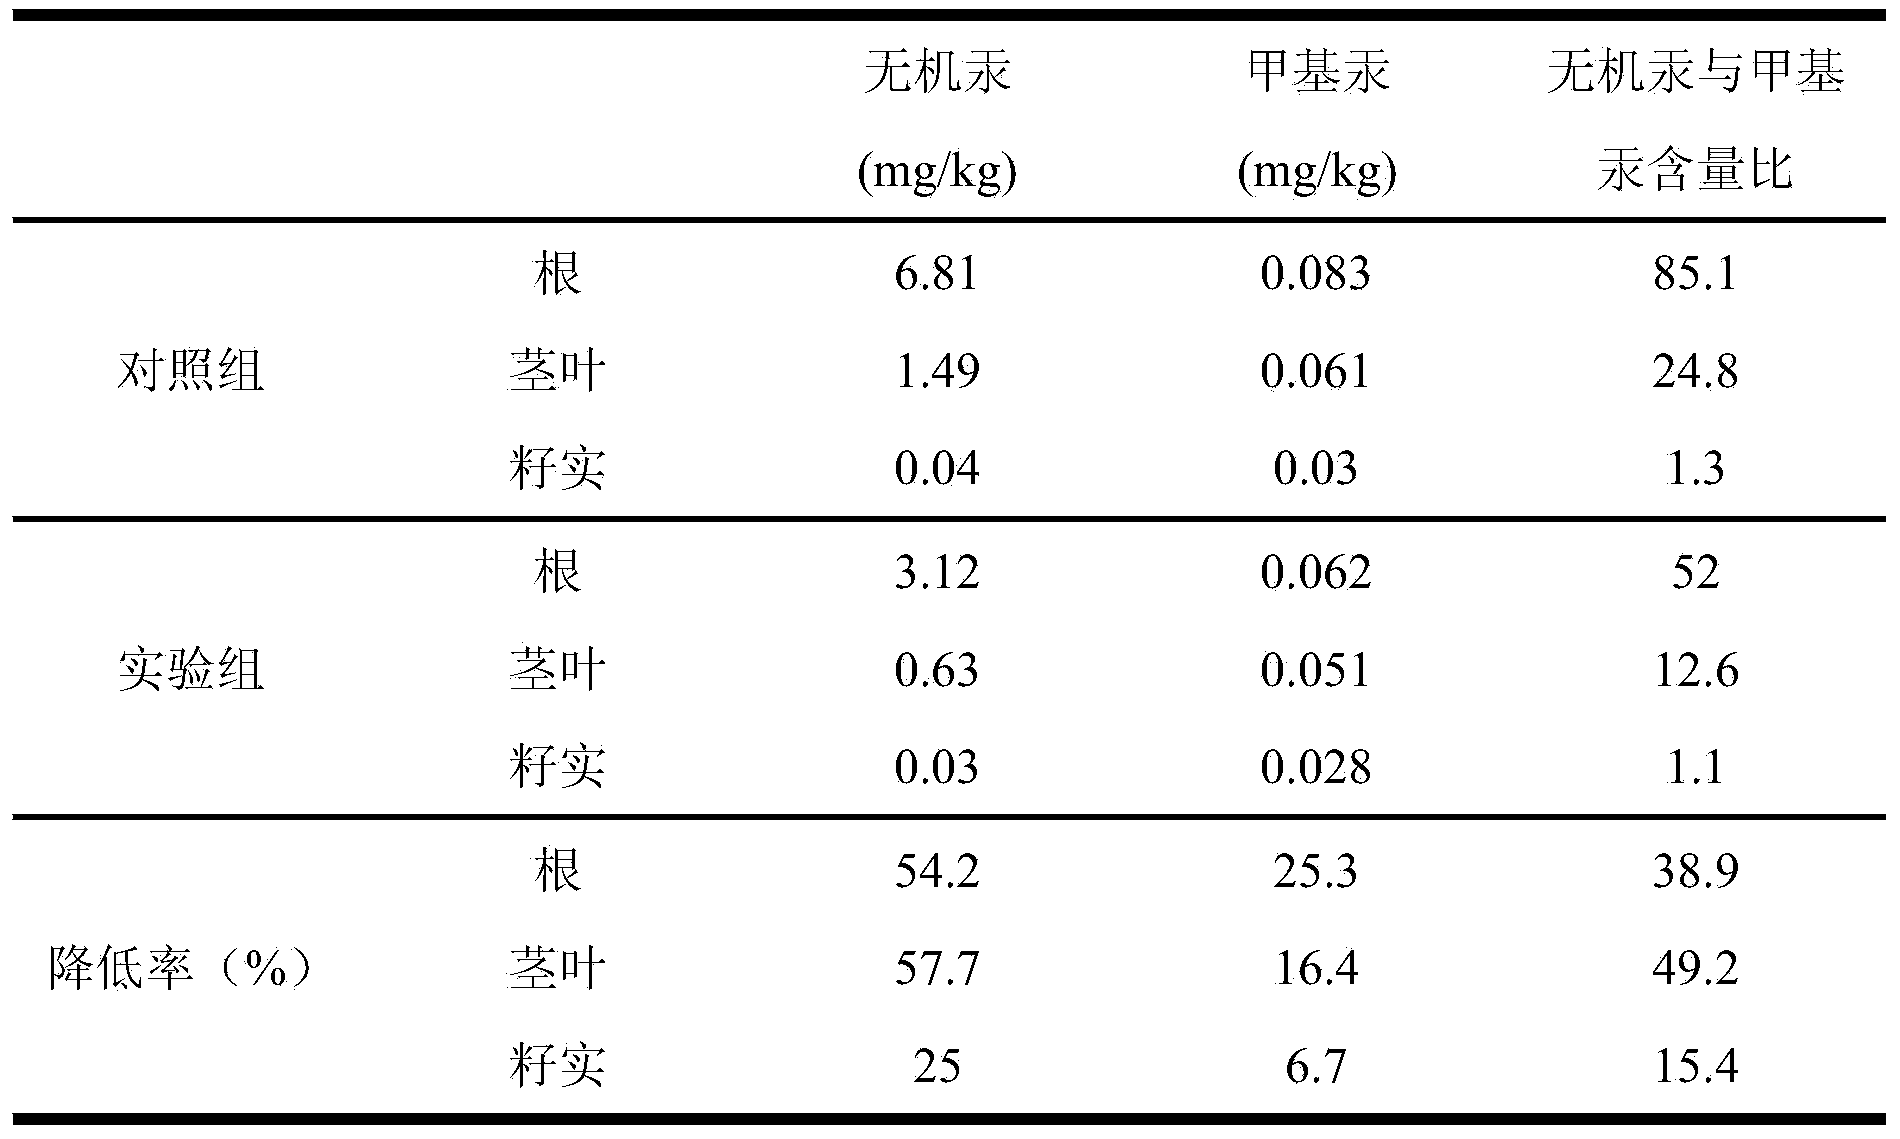 Method for reducing mercury content in rice